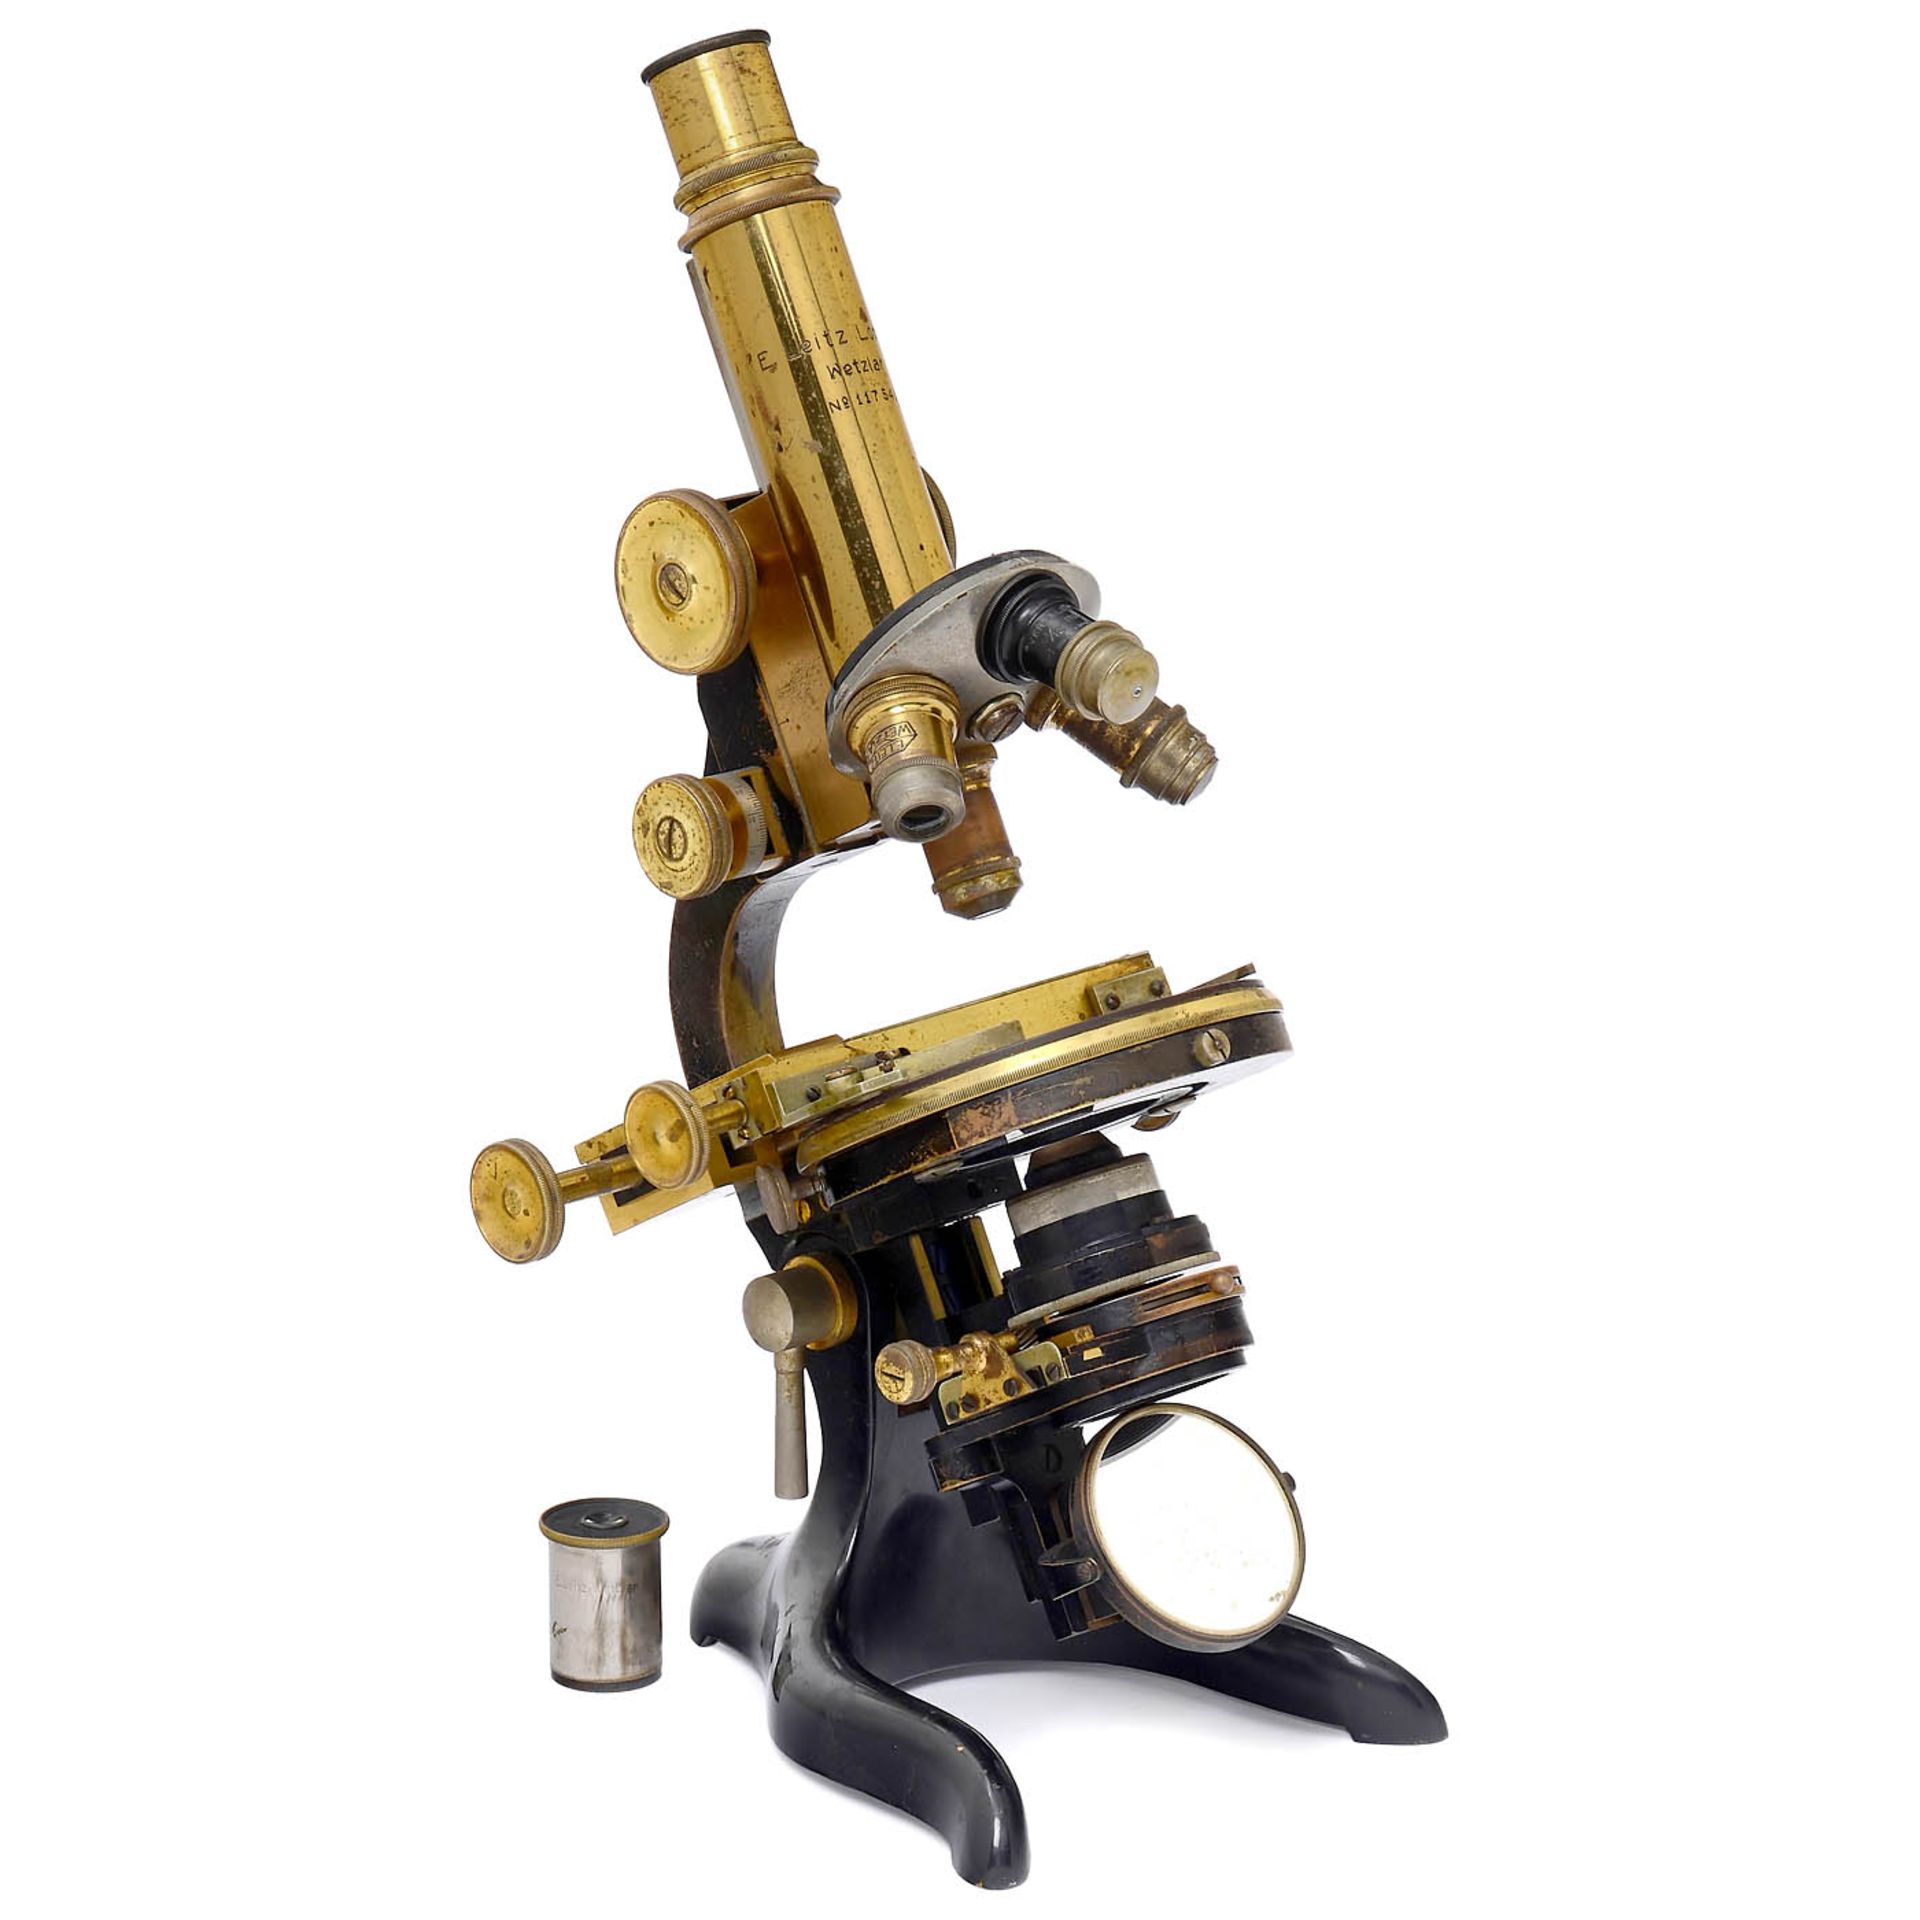 Large Laboratory Microscope by Ernst Leitz, Wetzlar, c. 1910